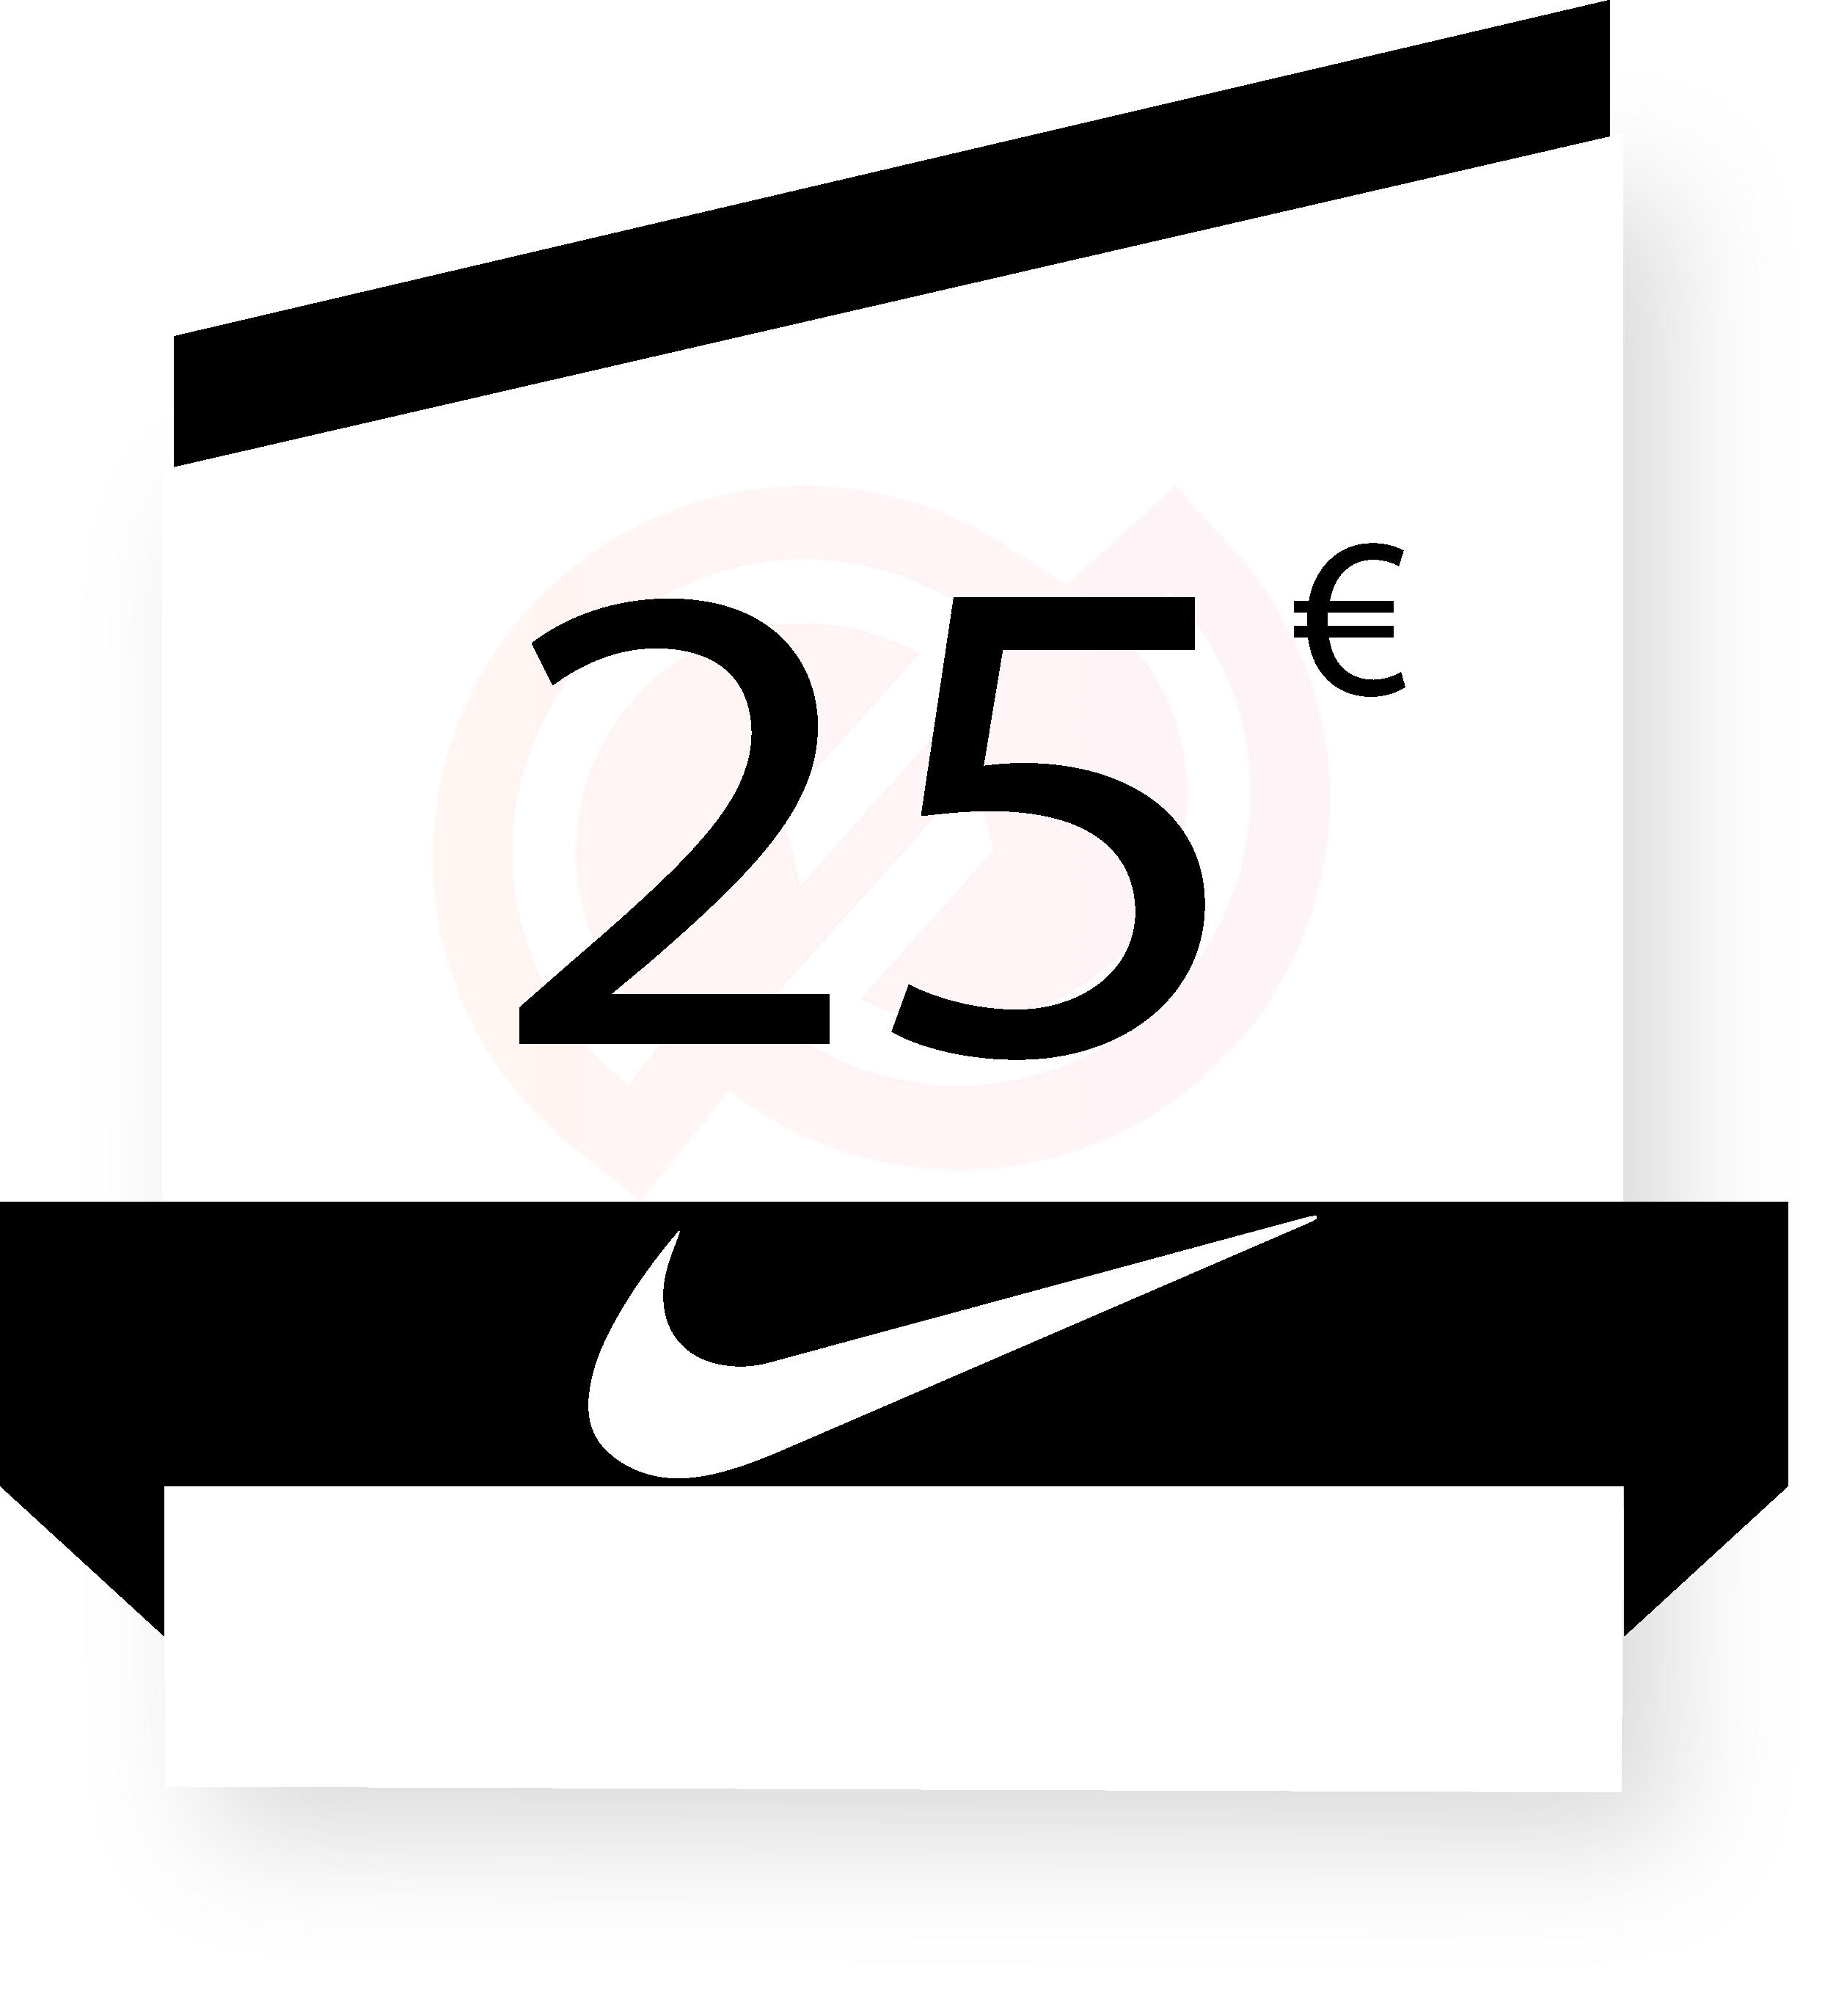 Coupon Nike 25€ sur internet - Gueez